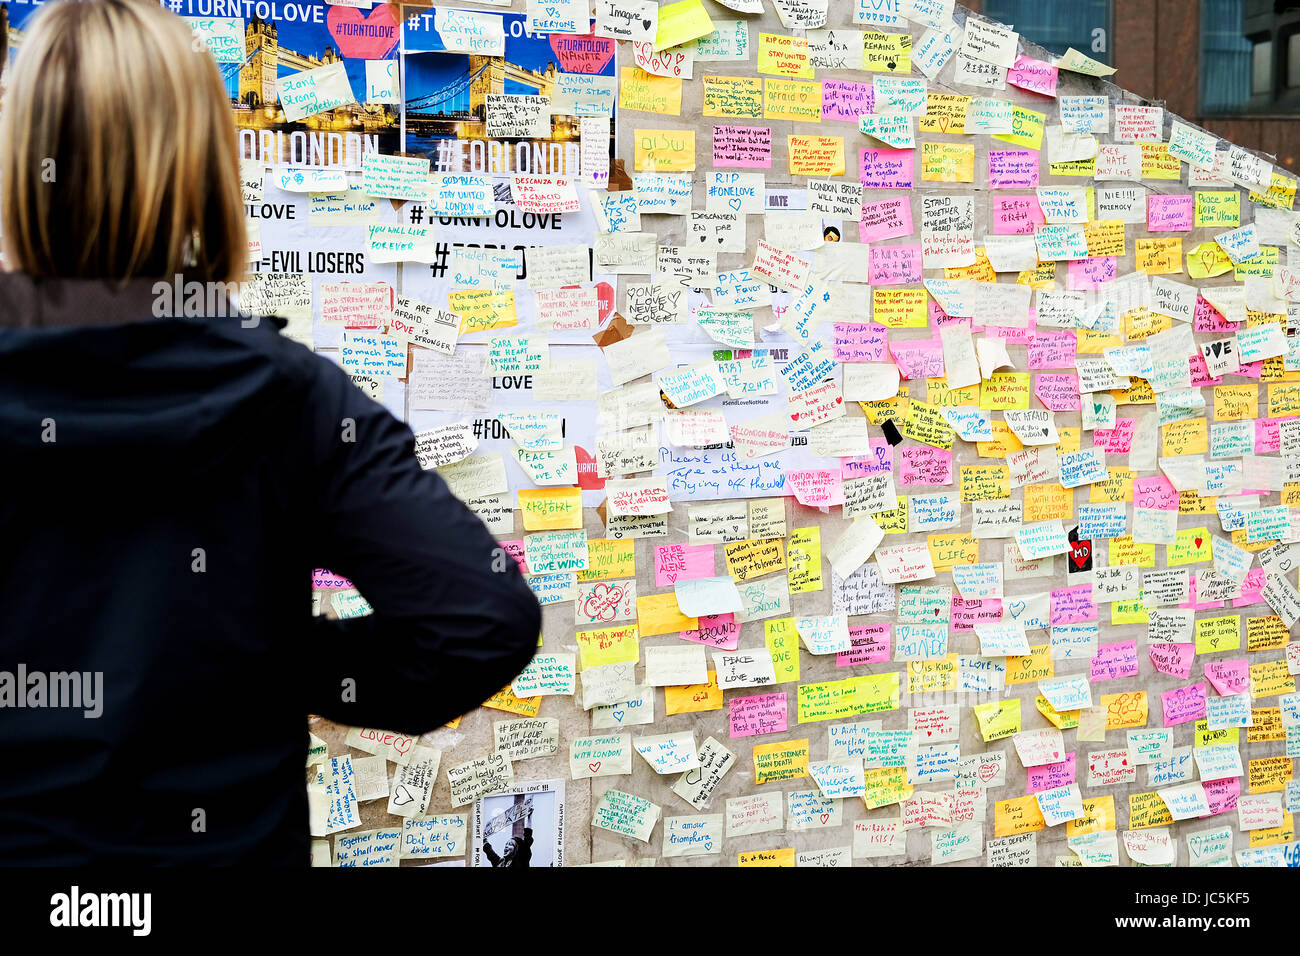 Floral Tribute & Nachrichten platziert in Erinnerung an diejenigen, die getötet oder verletzt durch die Terroristen Angriffe auf London Bridge und Borough Market, London. Stockfoto